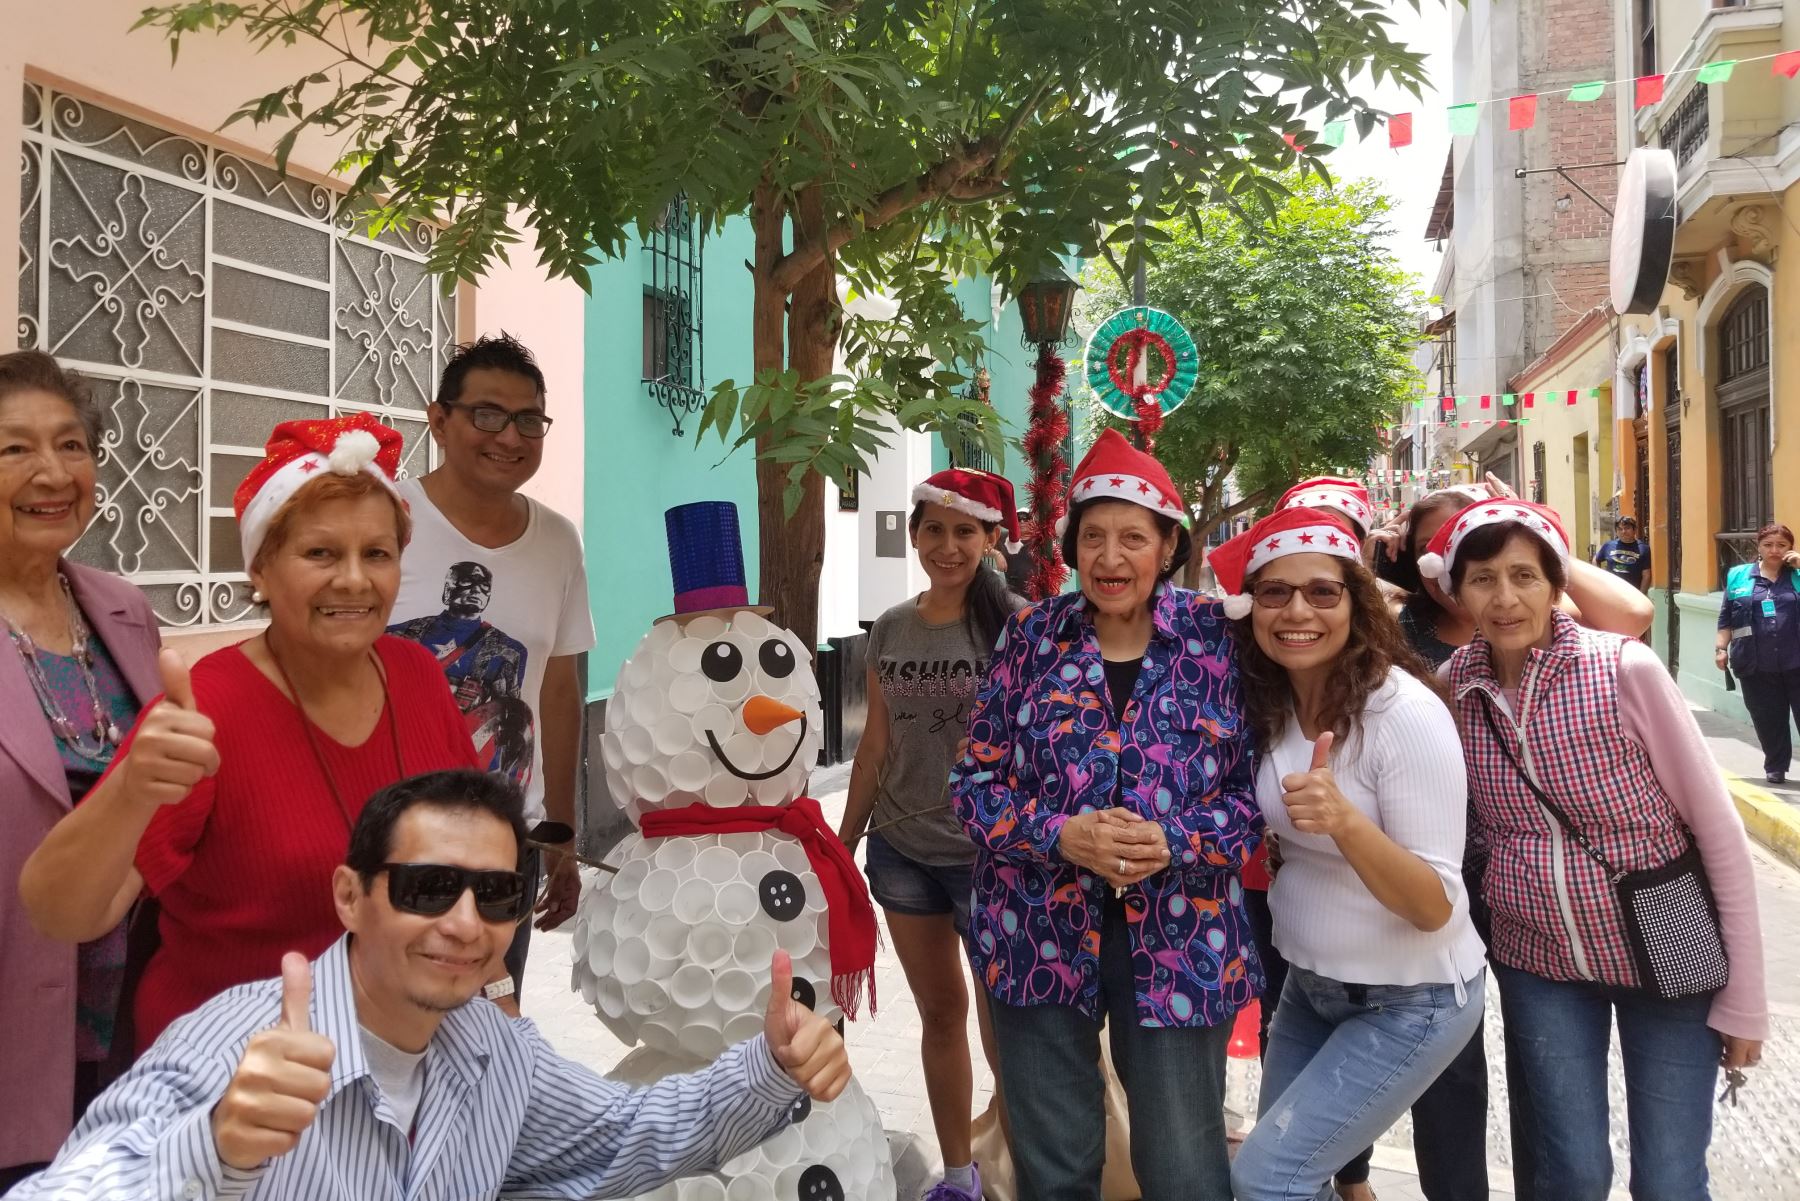 Los vecinos del pasaje Francisco García Calderón del Cercado de Lima ganaron el primer concurso “Decora tu barrio en Navidad", organizado por la Municipalidad de Lima.